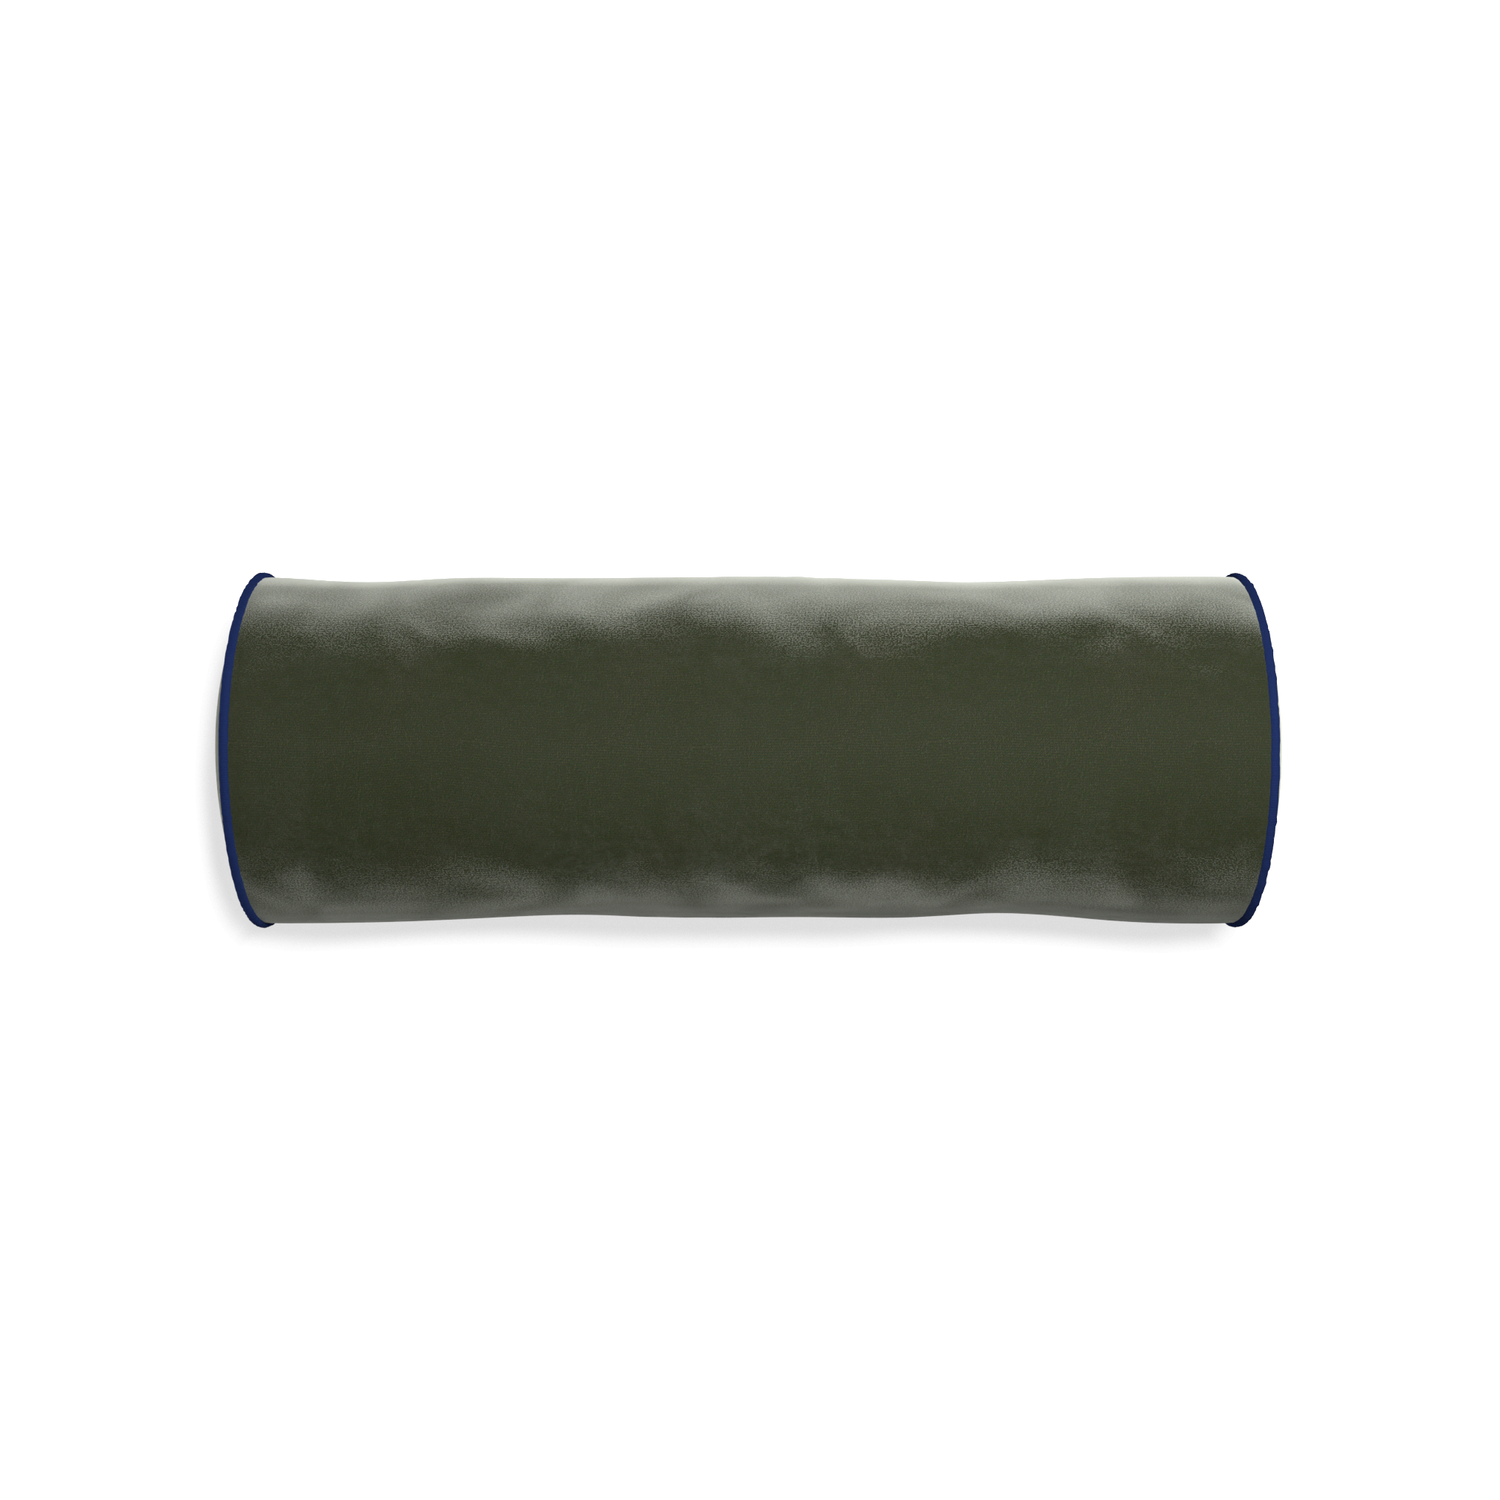 bolster fern green velvet pillow with navy blue piping